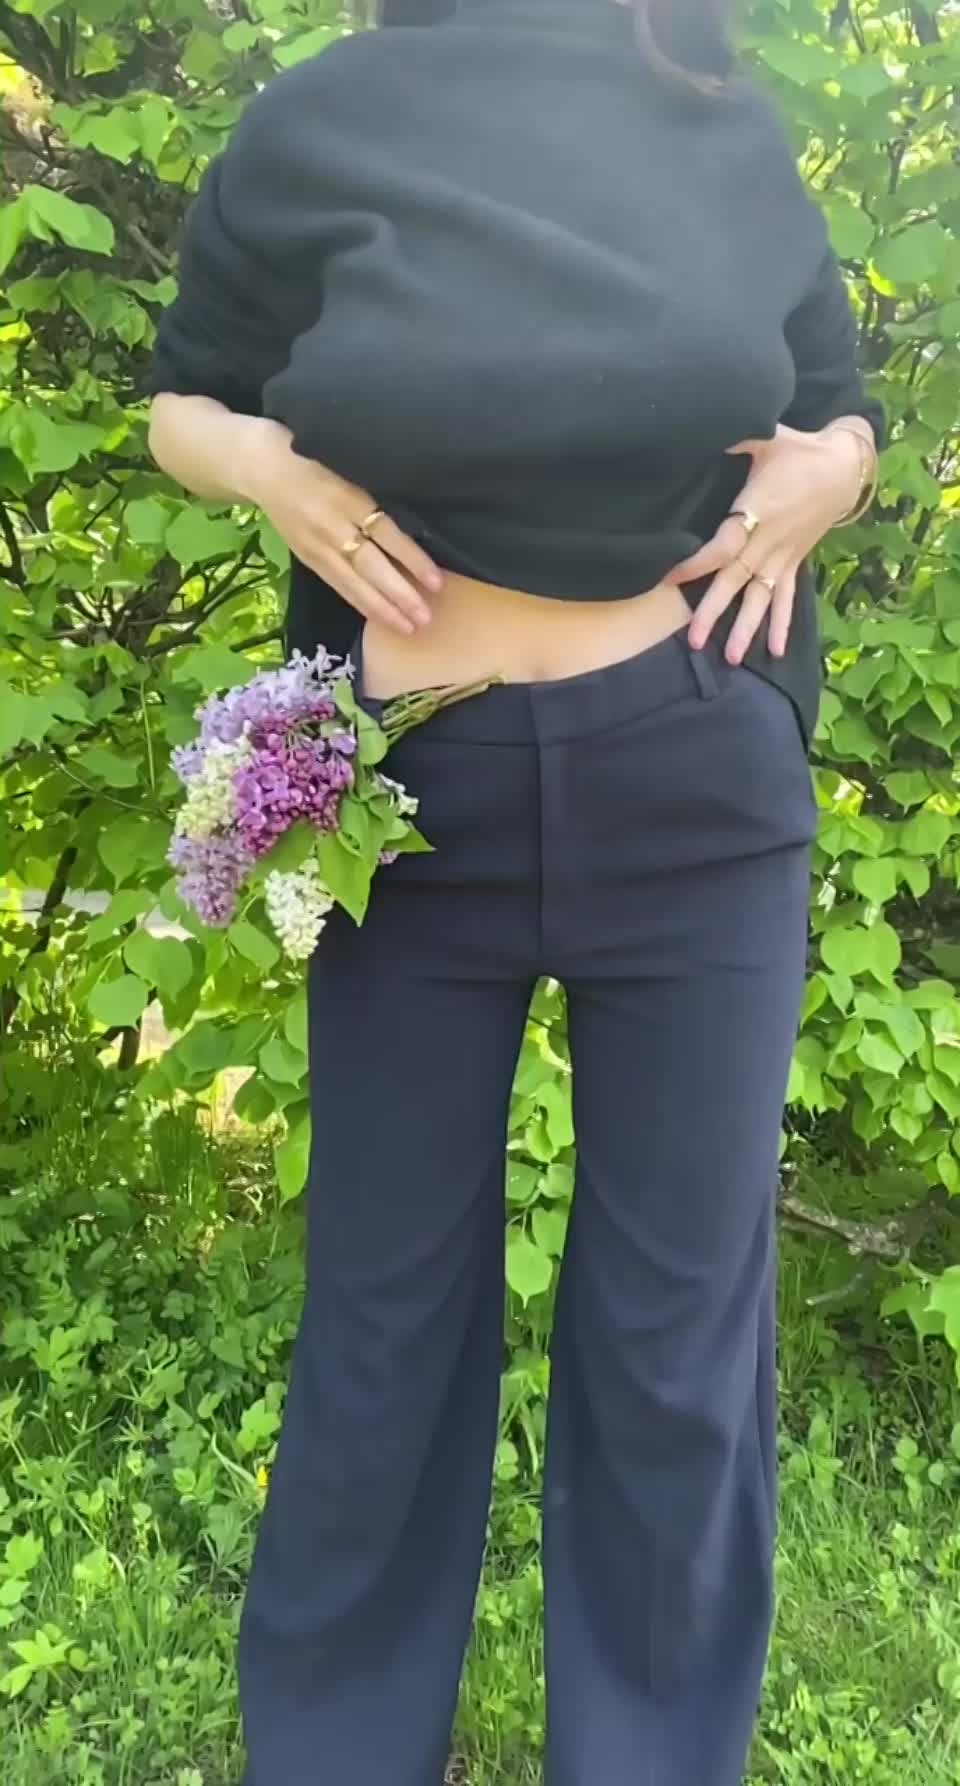 An outdoor boob drop! 😇 : video clip